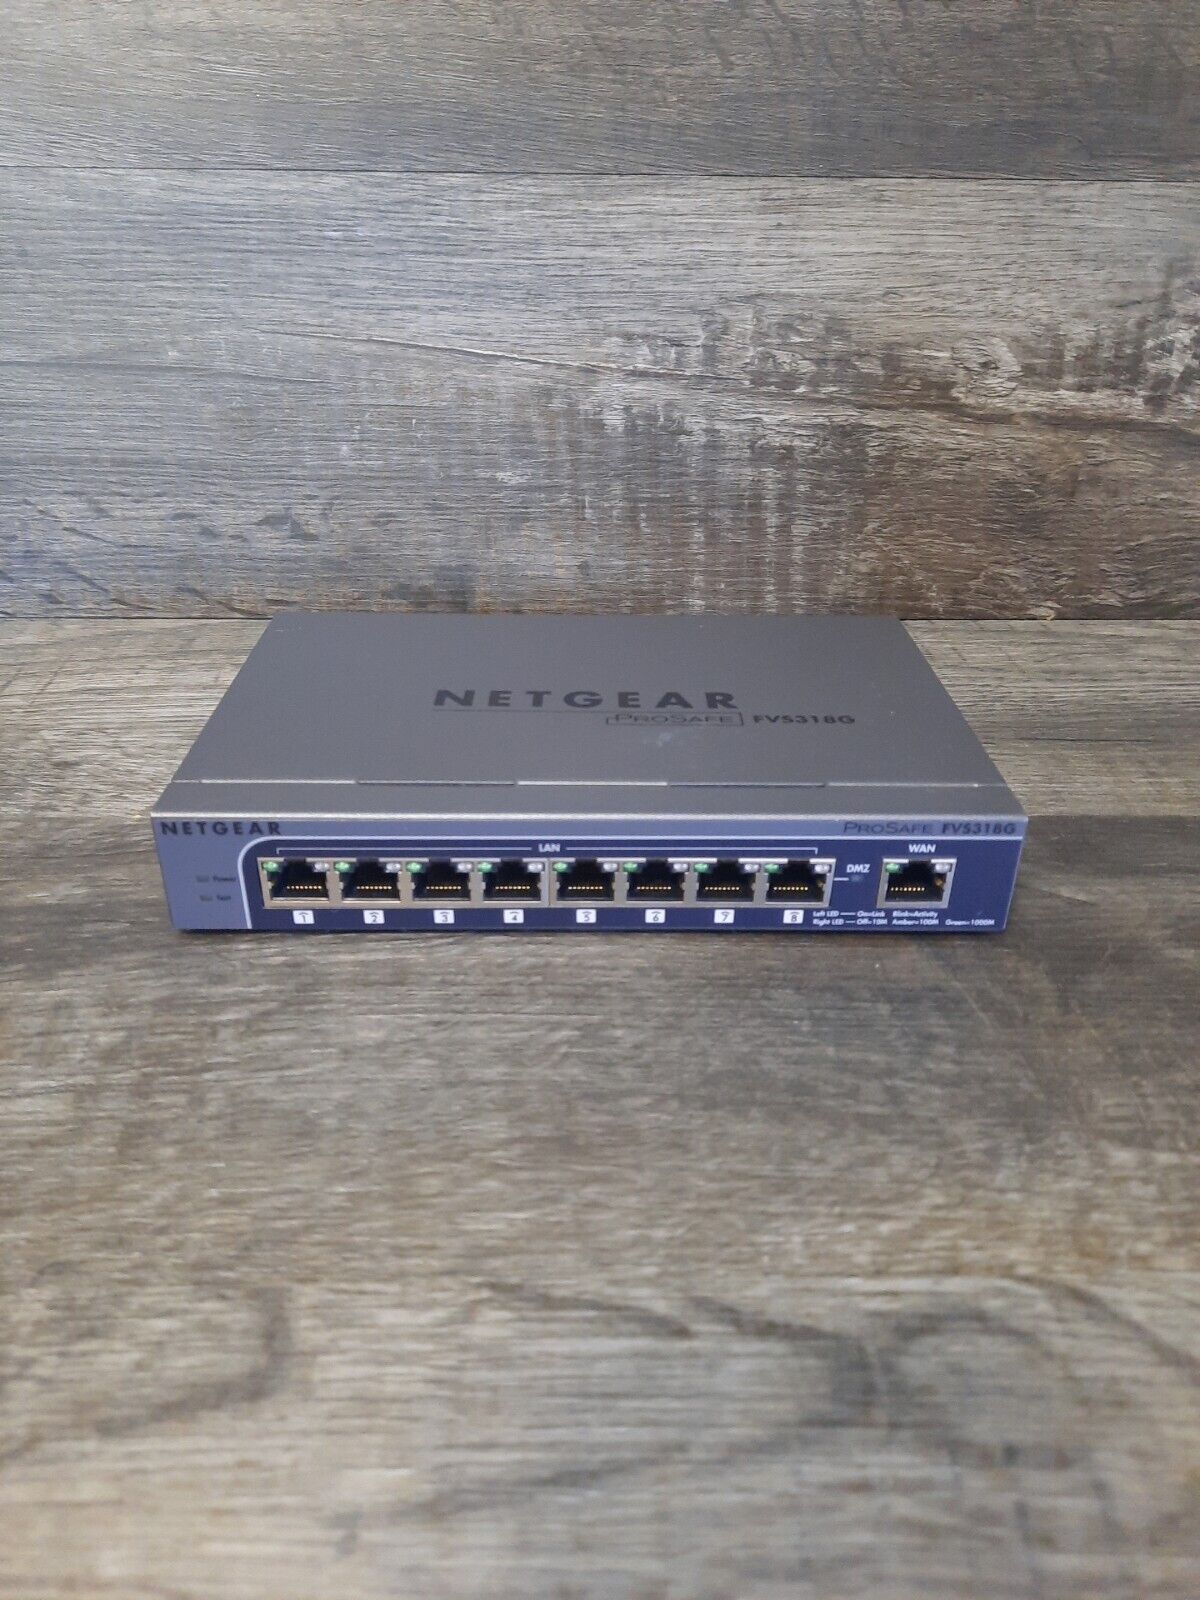 NETGEAR ProSAFE 8-PORT Gigabit VPN Business-class Firewall Model FVS318G 100NAS